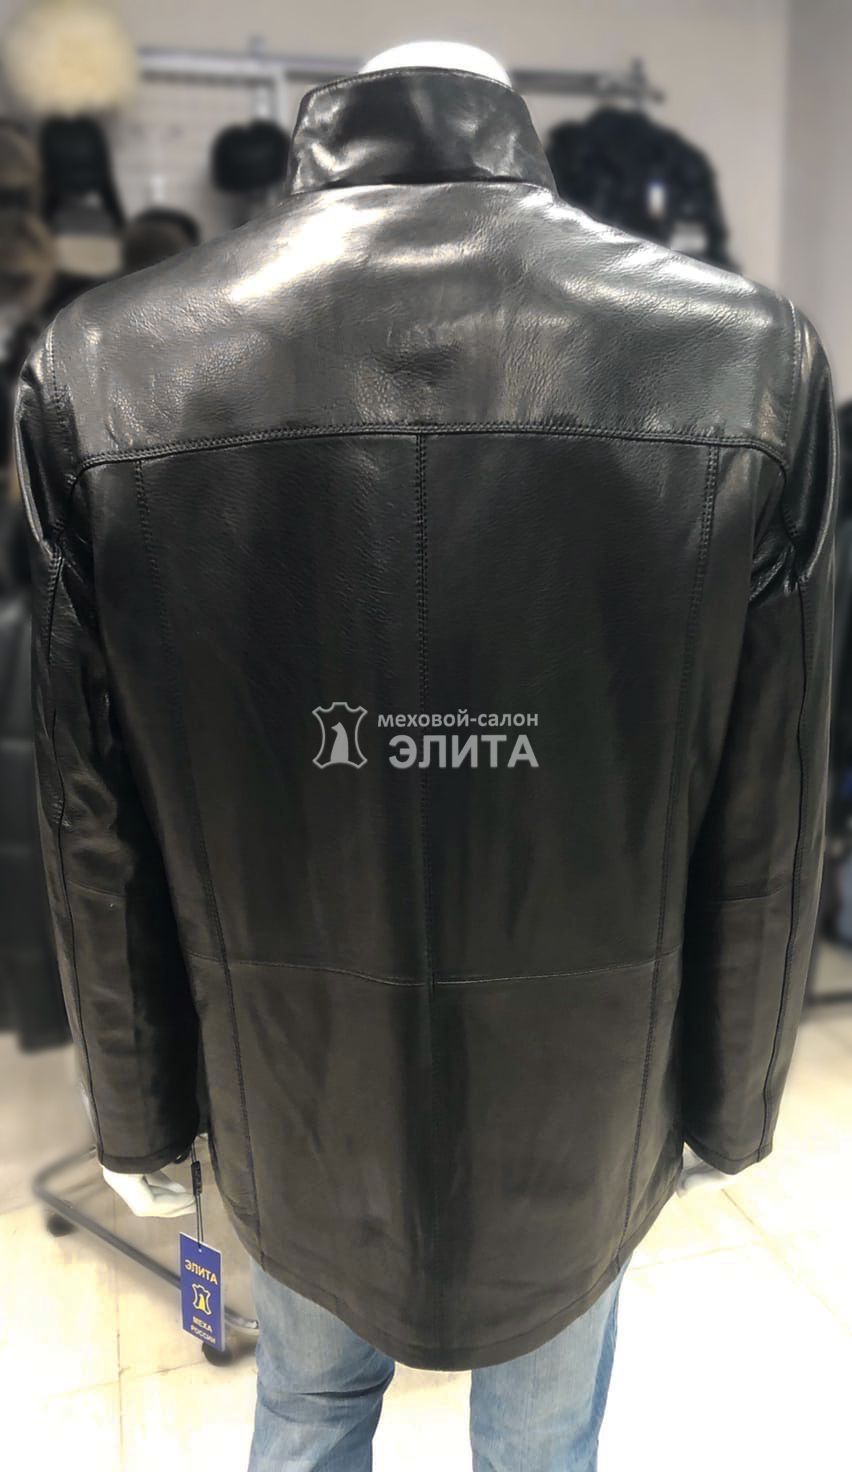 Куртка из натуральной кожи м.BN8735  р-р 56-58, цена 16490 рублей в интернет-магазине кожи и меха ЭЛИТА. Вид 2